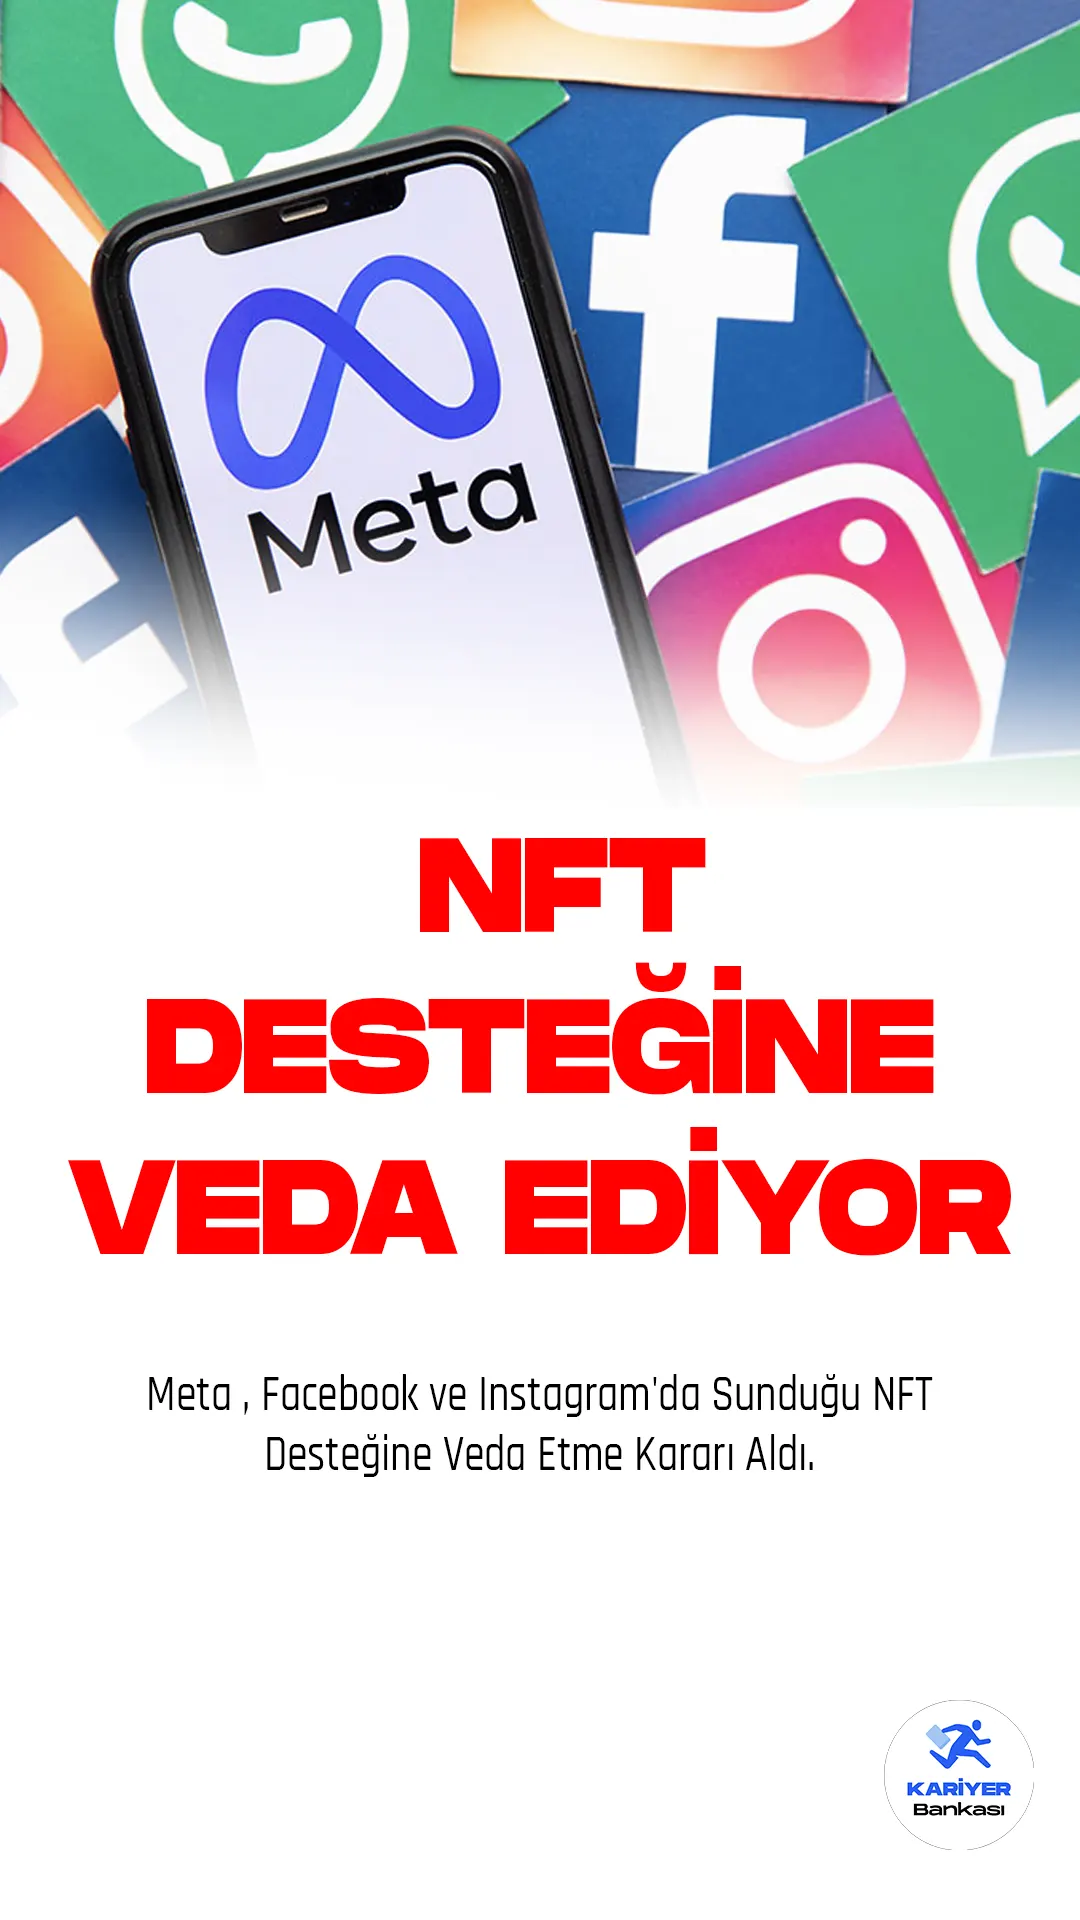 Meta , Facebook ve Instagram'da Sunduğu NFT Desteğine Veda Etme Kararı Aldı